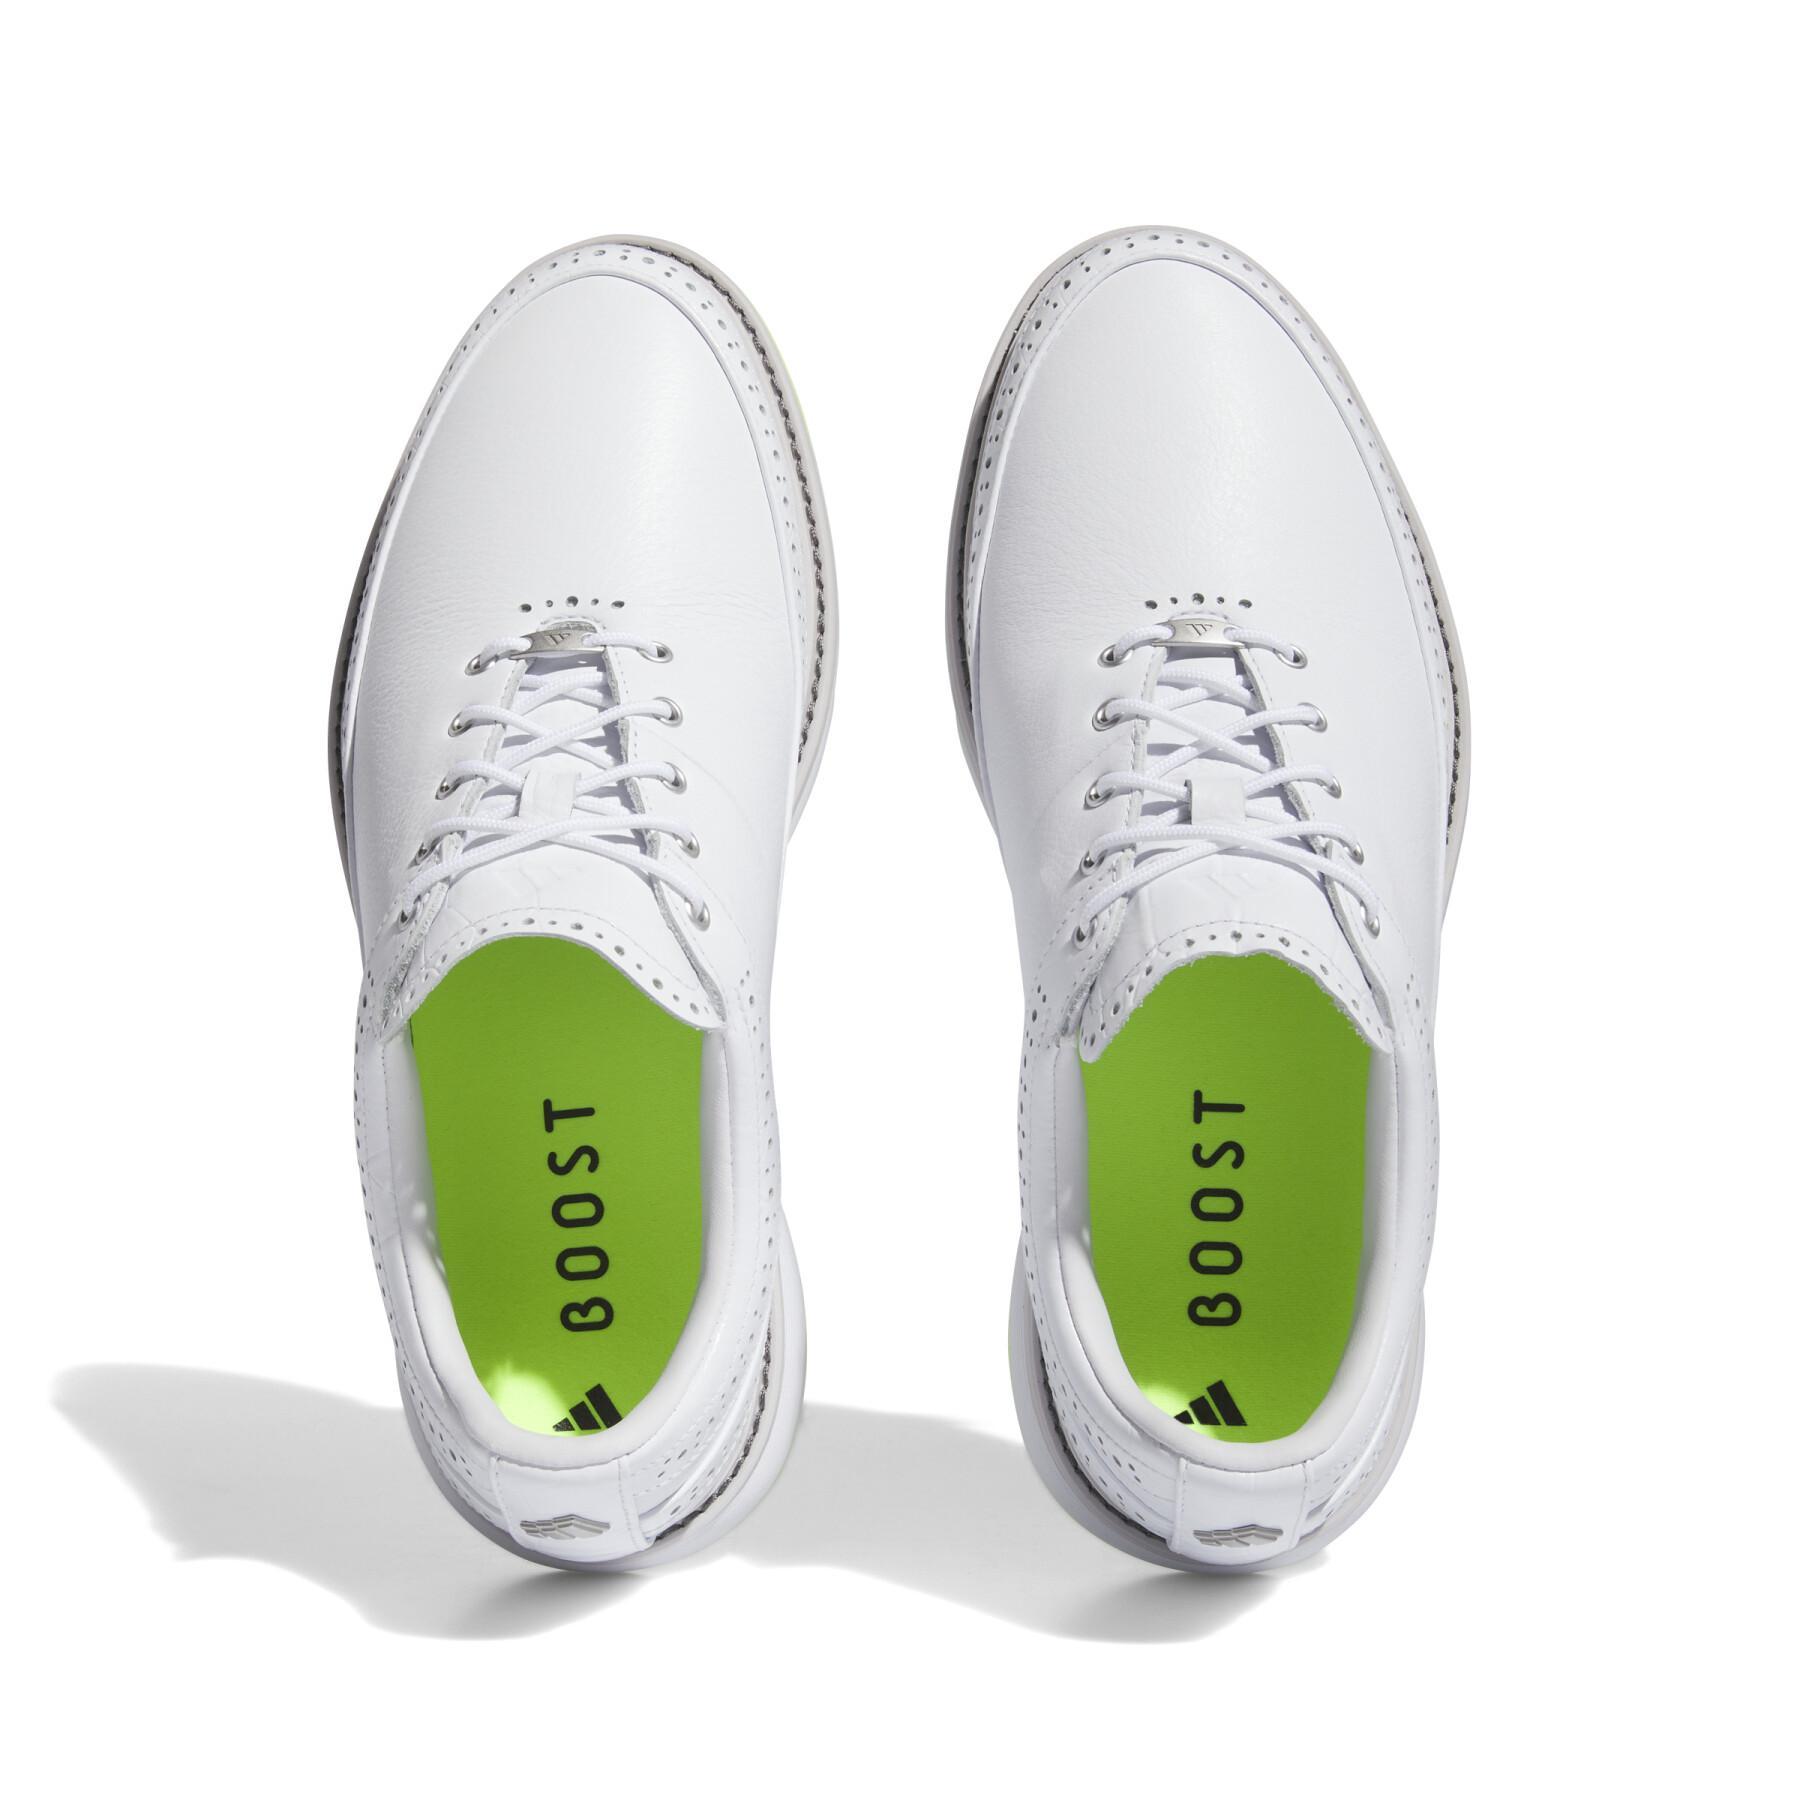 Sapatos de golfe sem espiga adidas MC80 Spikeless